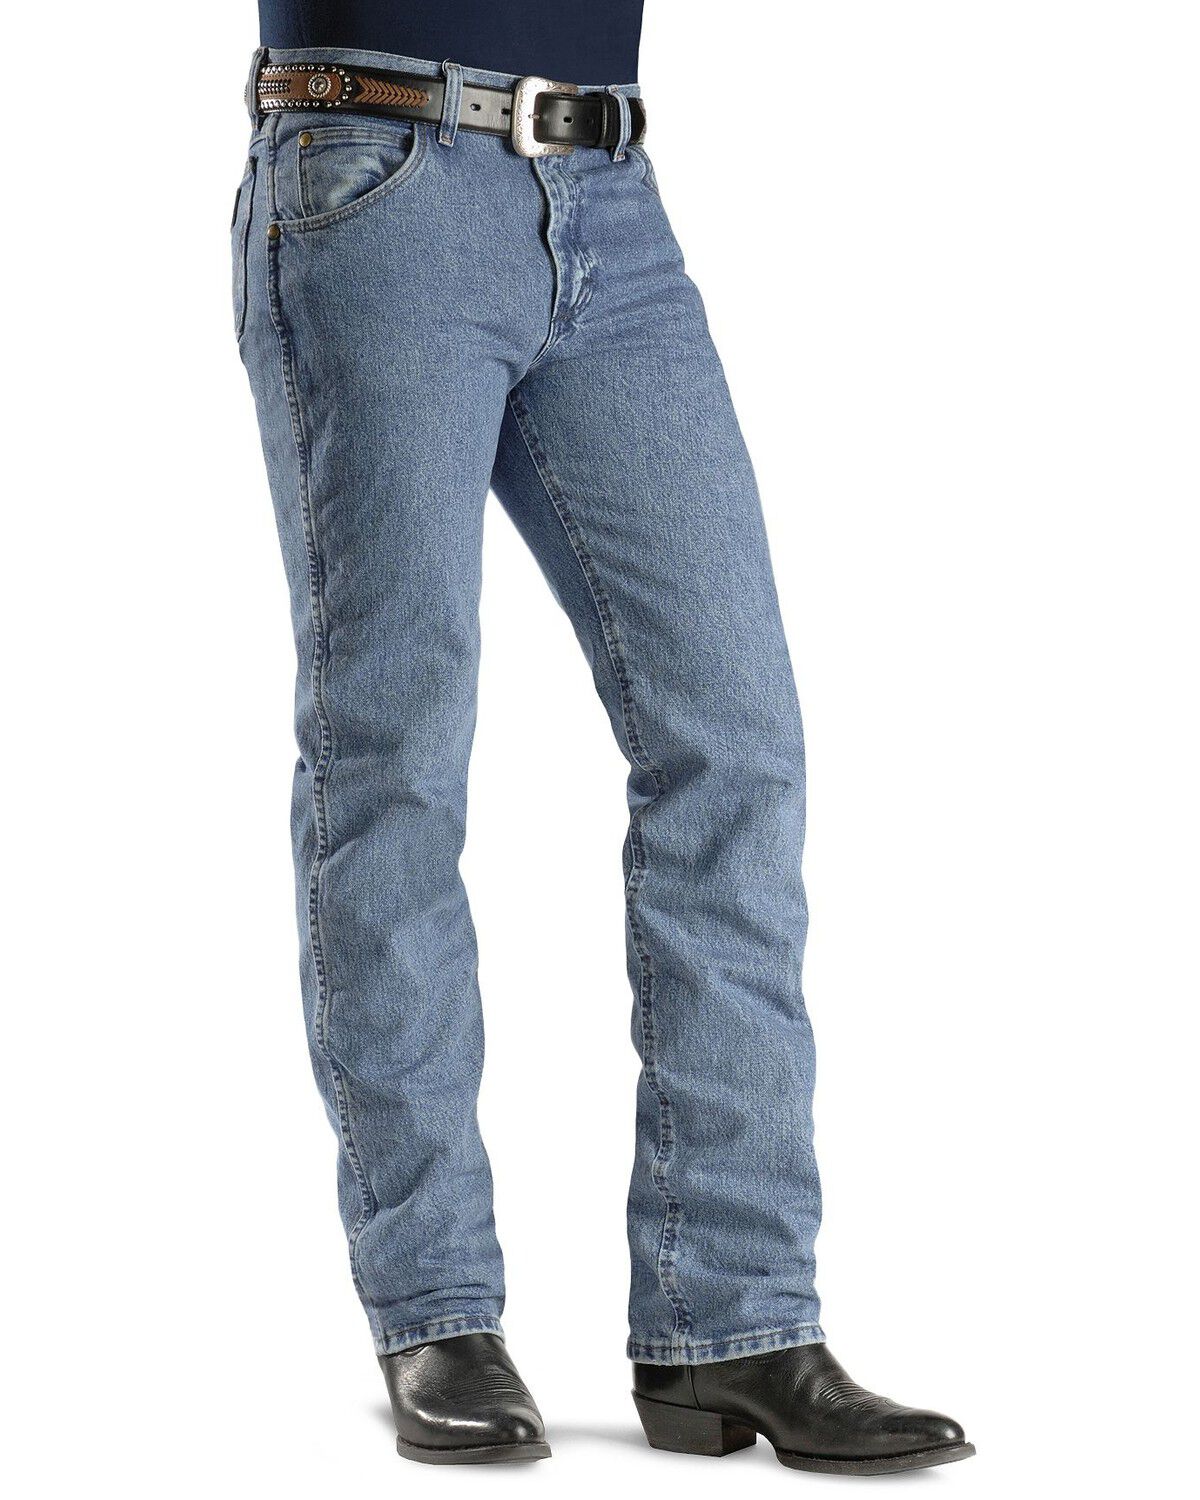 wrangler stonewash jeans